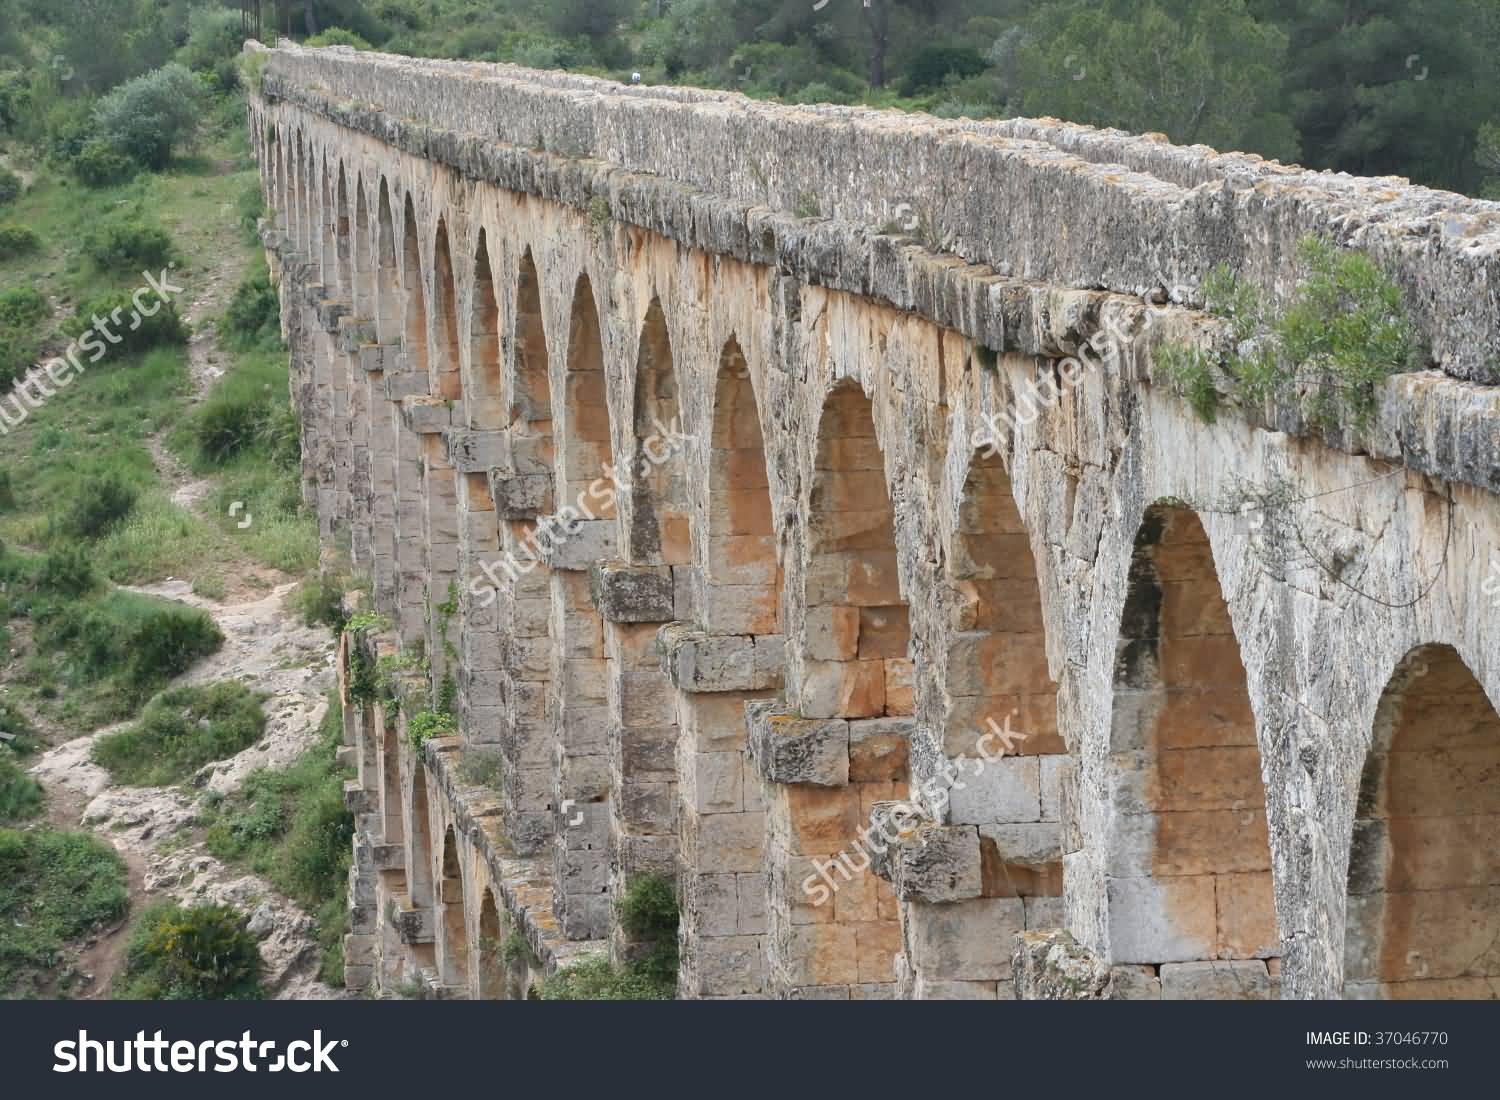 Roman Aqueduct Of Segovia In Spain